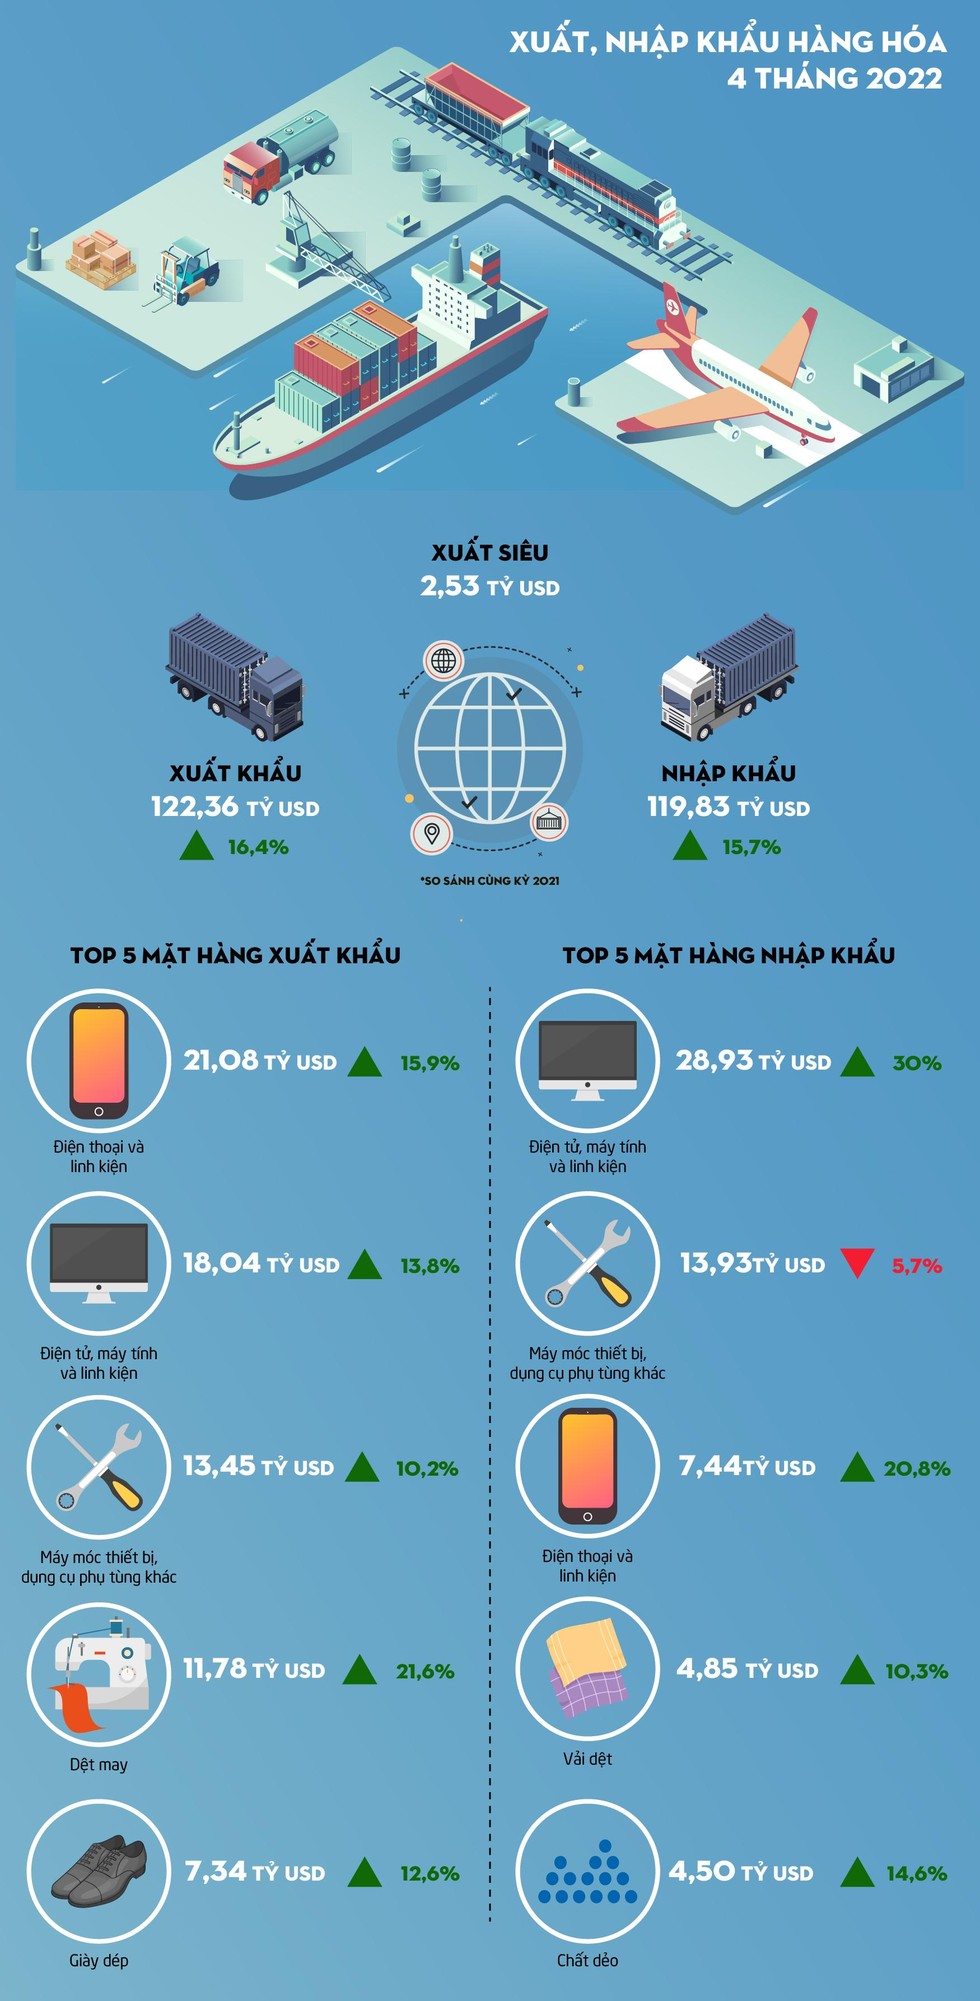 [Infographic] 4 tháng 2022, Việt Nam ước tính xuất siêu 2,53 tỷ USD ảnh 1